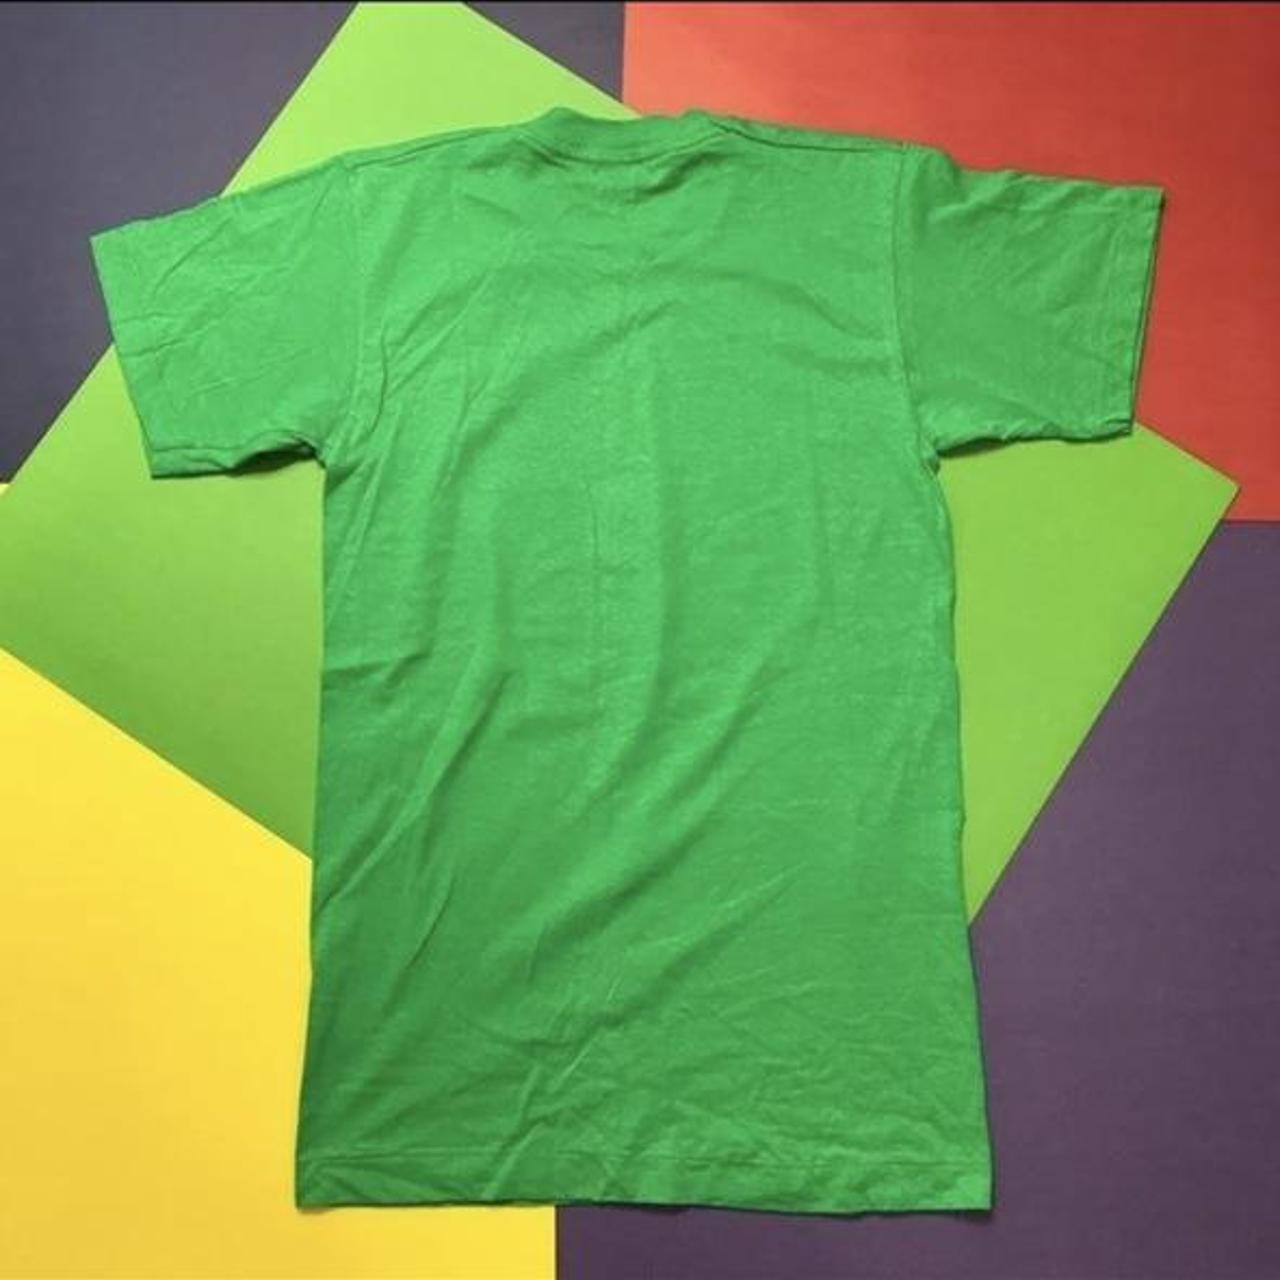 Screen Stars Women's Green T-shirt (2)